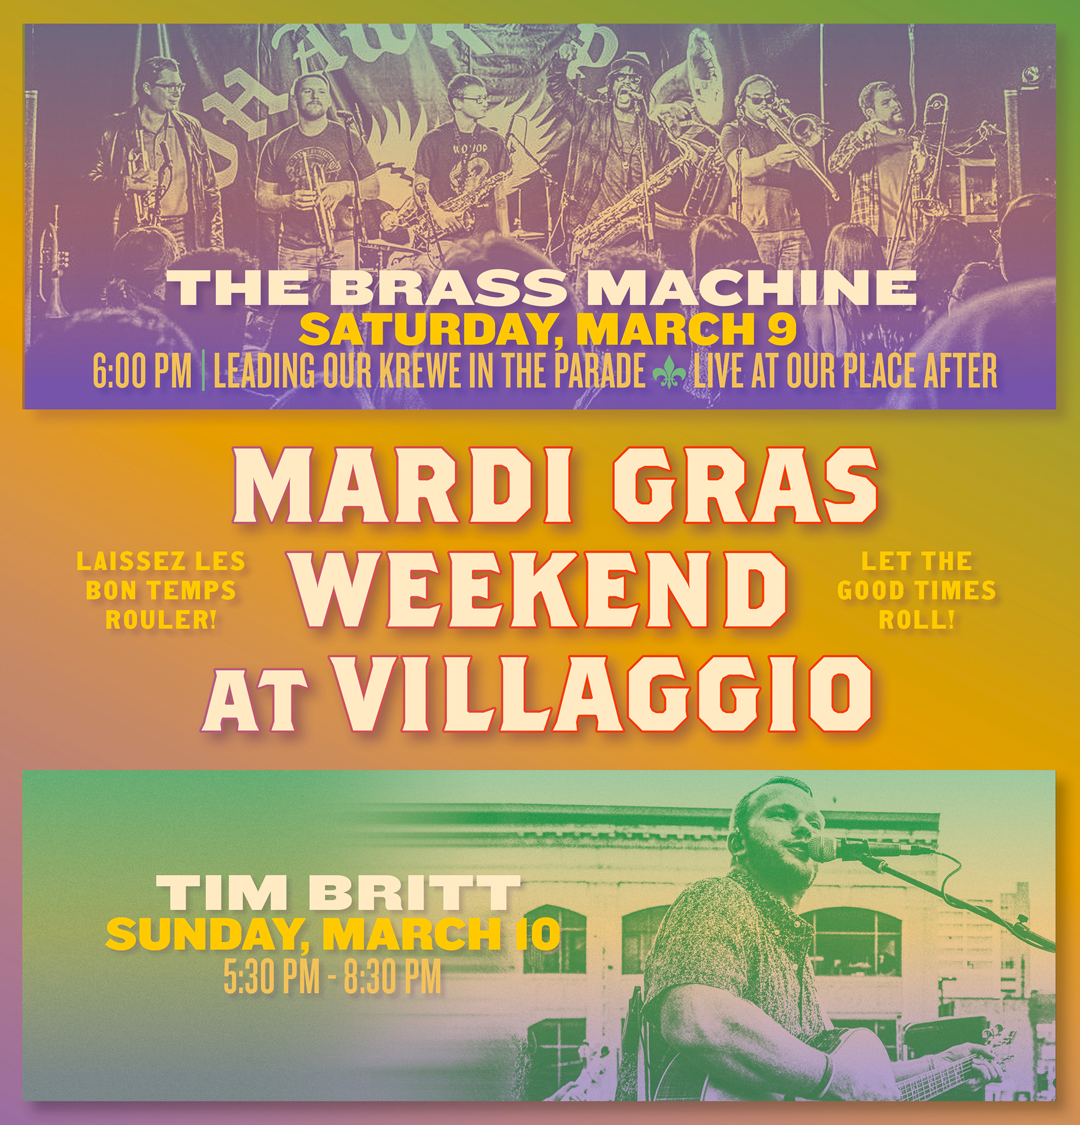 Mardi Gras Weekend at Villaggio | Tim Britt